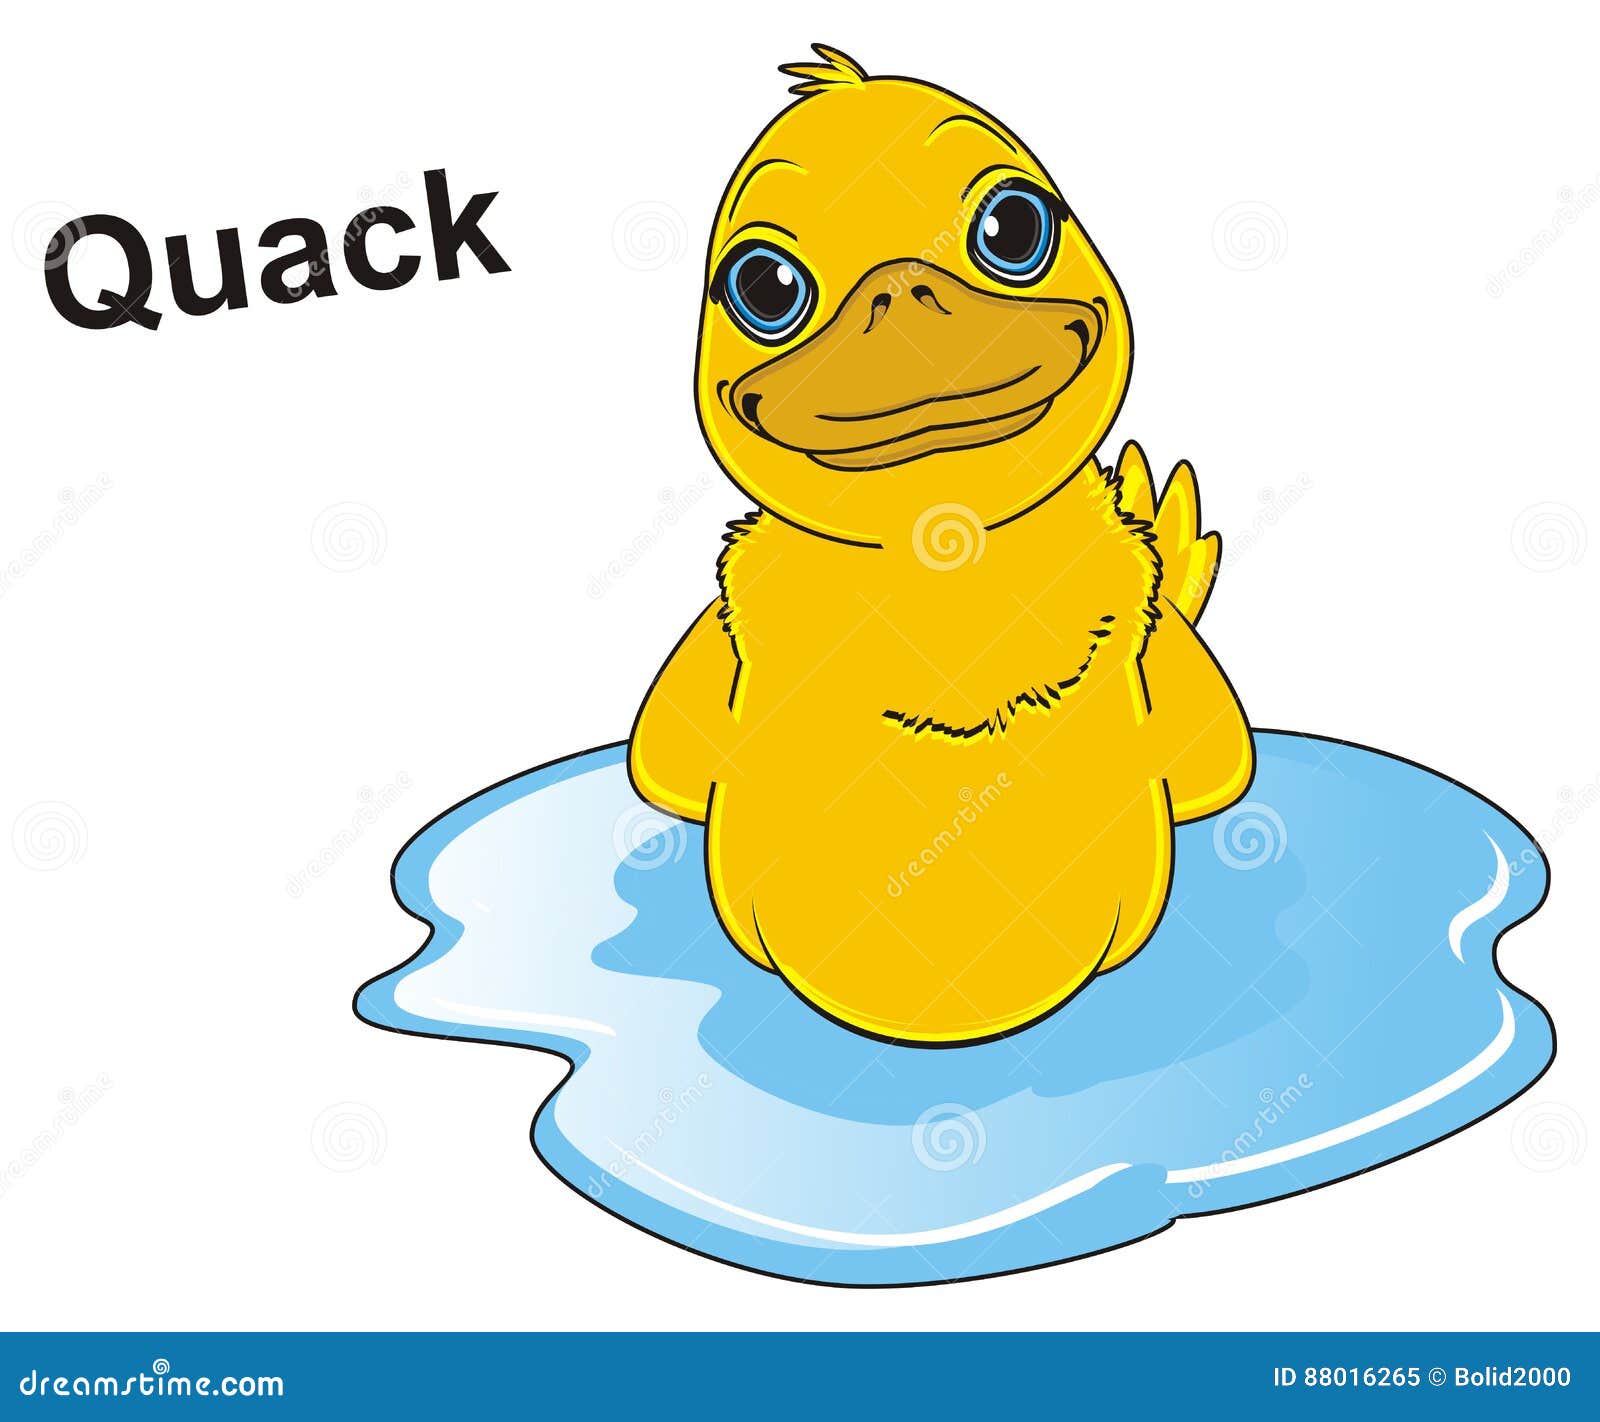 duck say quack